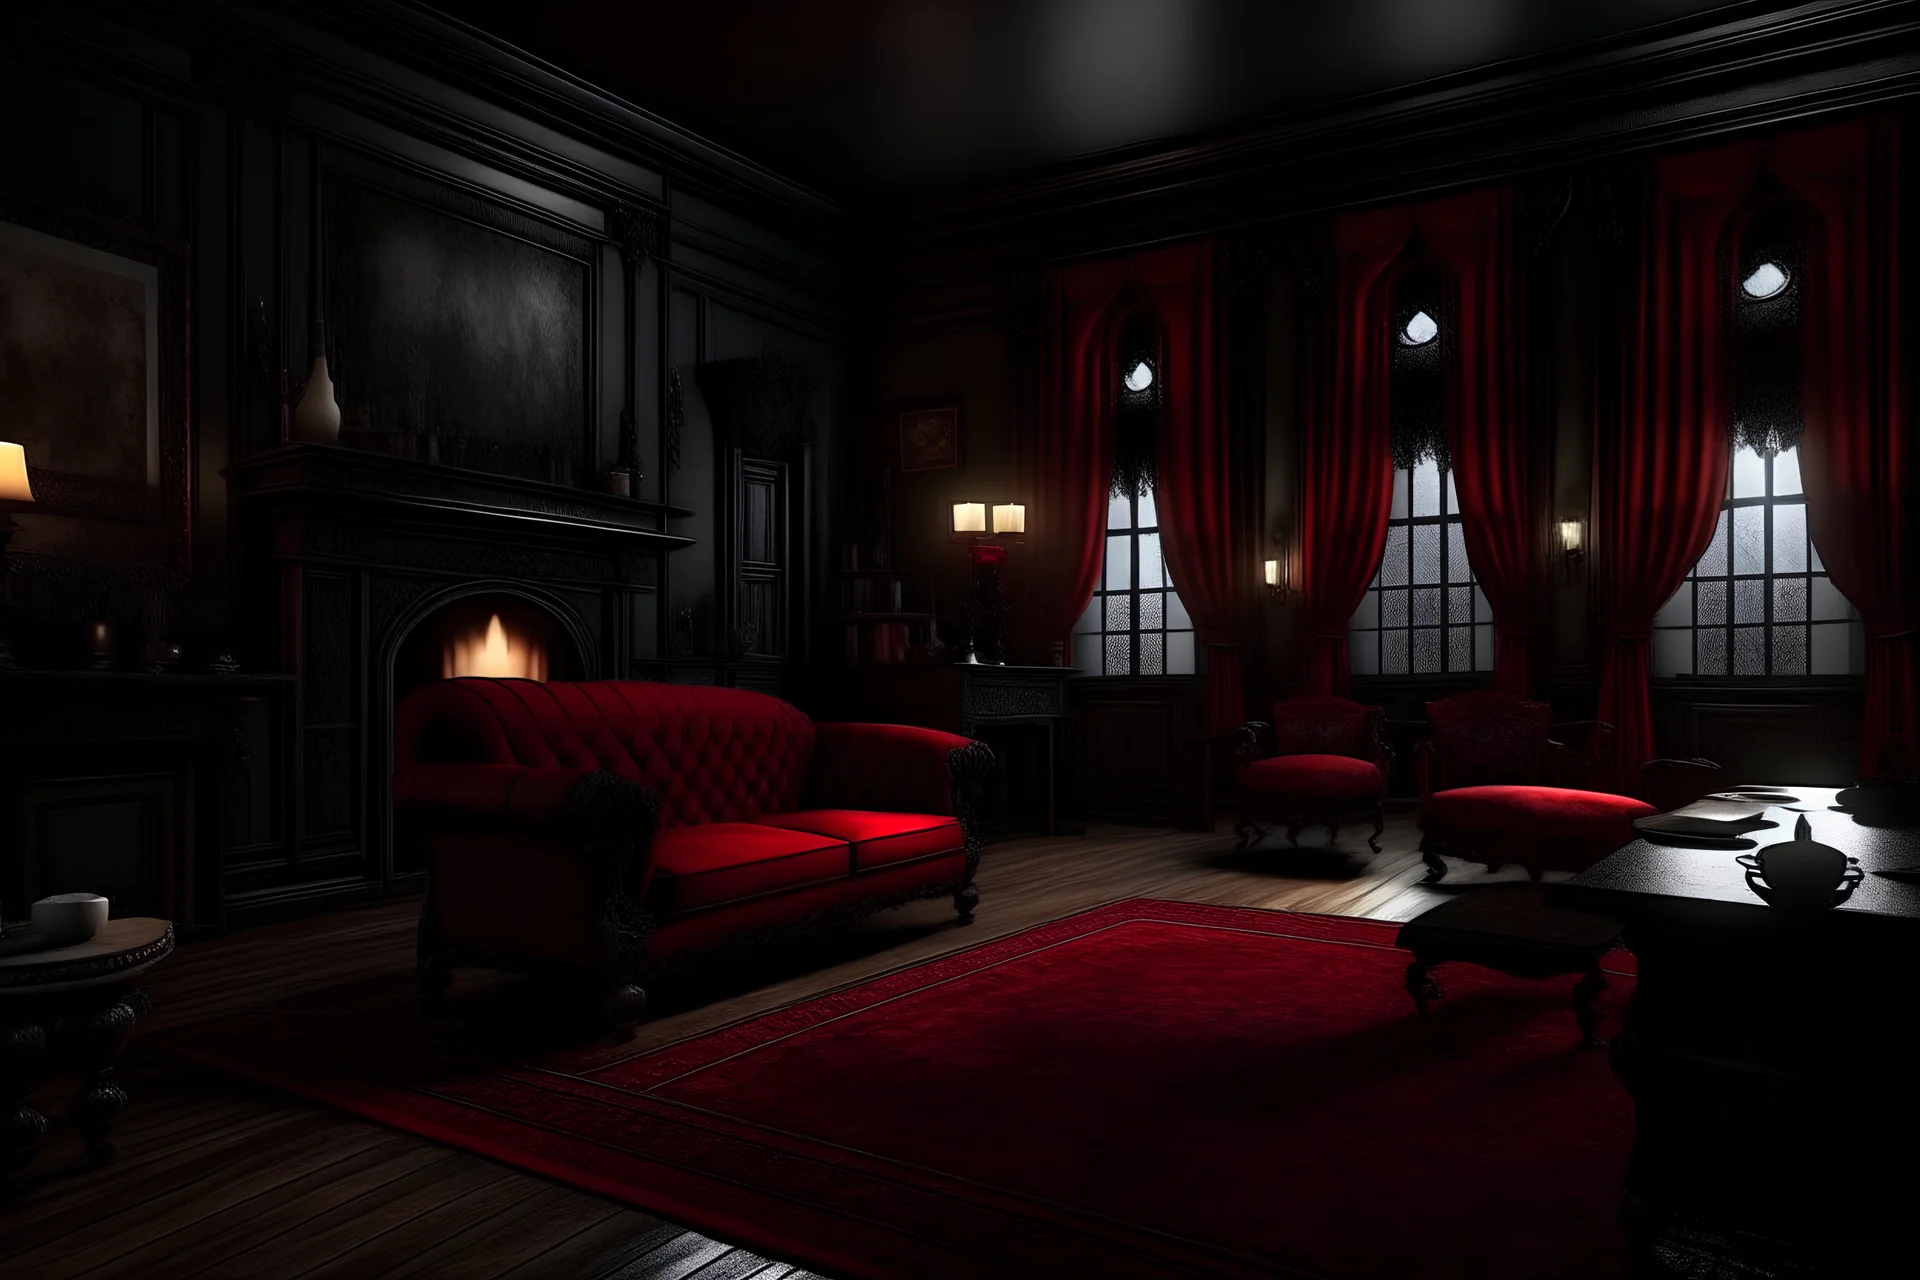 gran salon oscuro y tetrico con telas rojas medieval